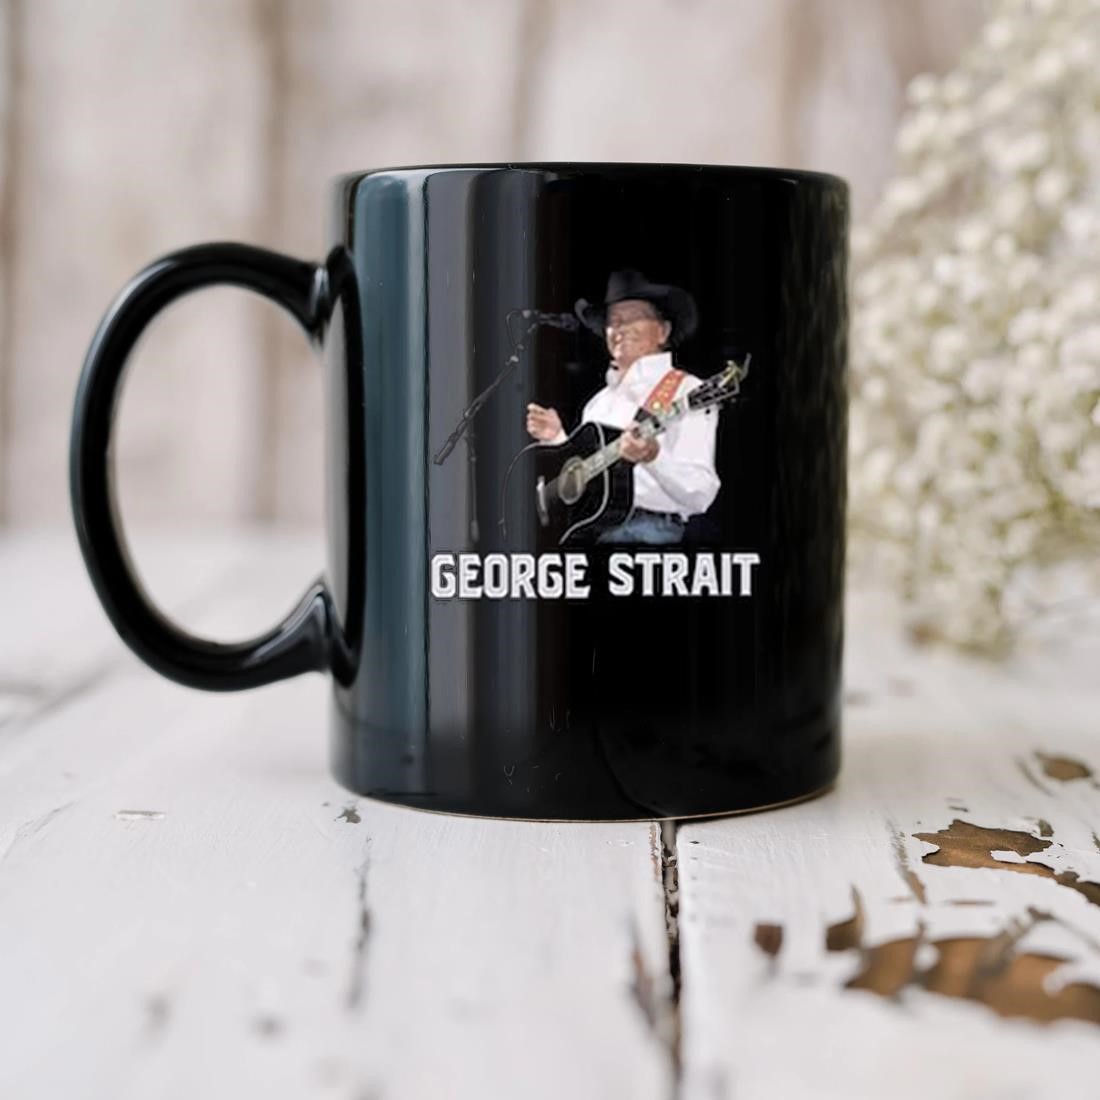 George Strait Codigo Mug biu.jpg